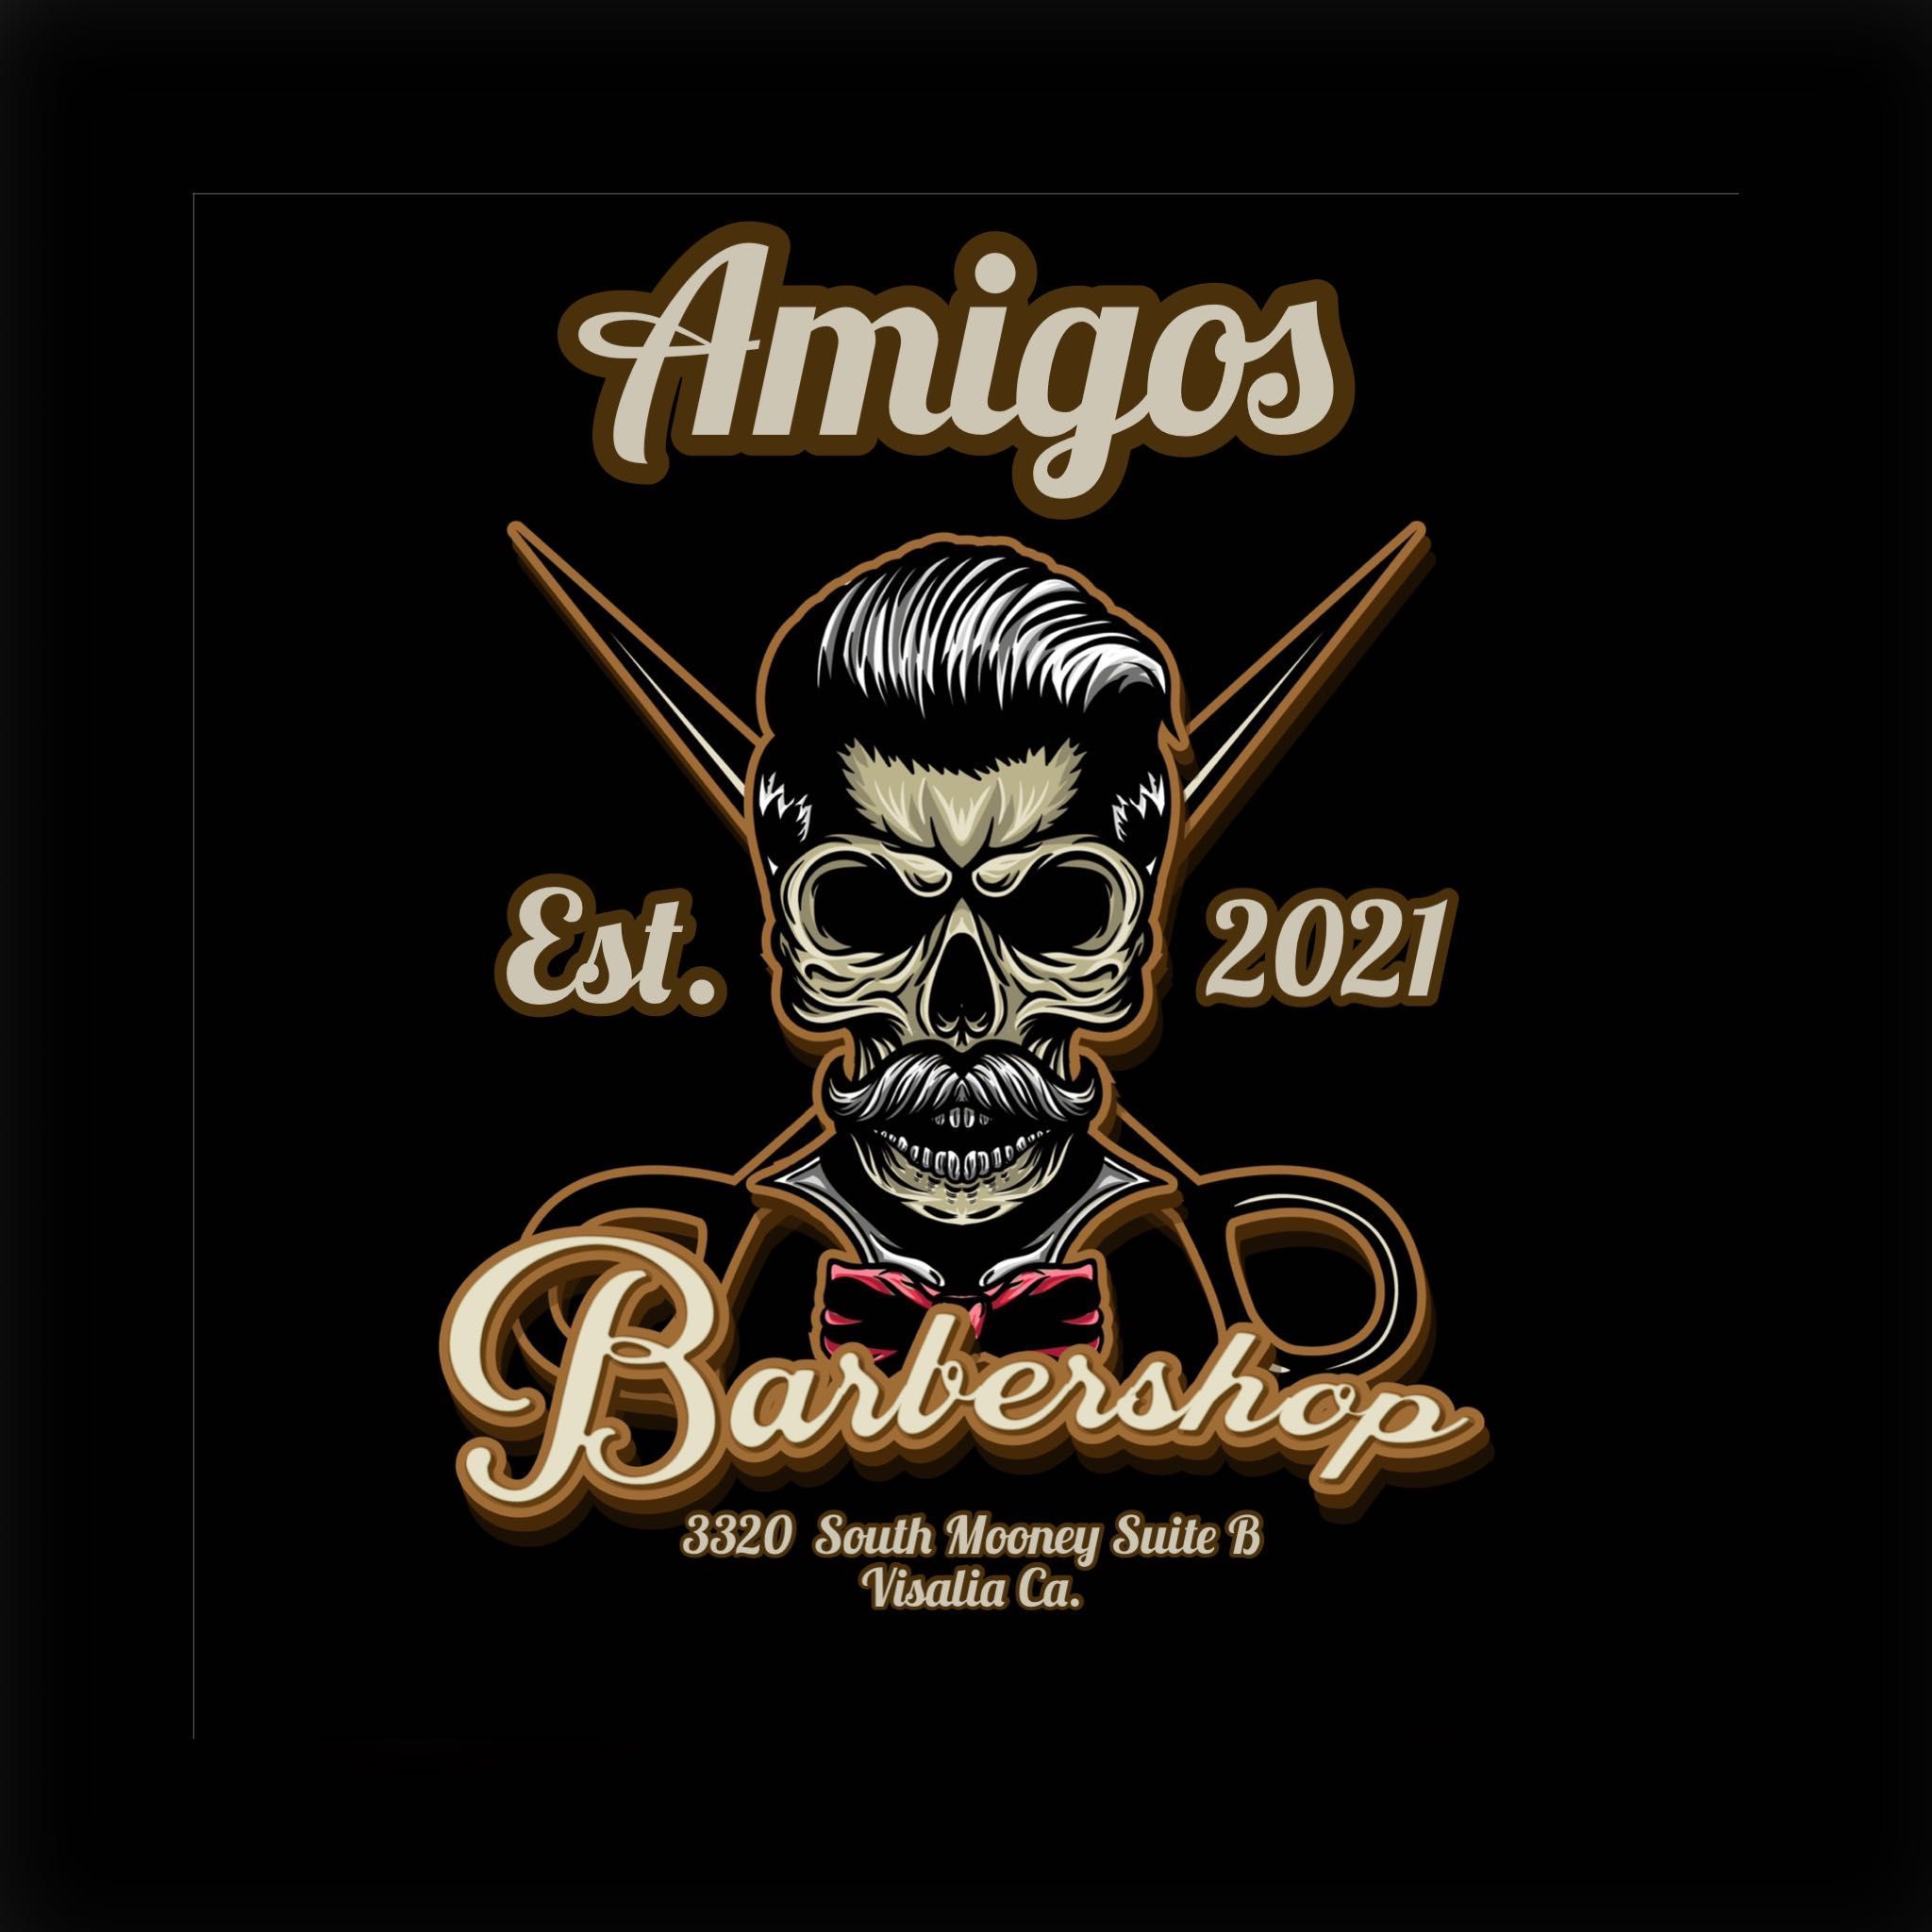 Amigos Barbershop (Nacho Guzman), 3320 S. Mooney Blvd, Suite B, Visalia, 93277